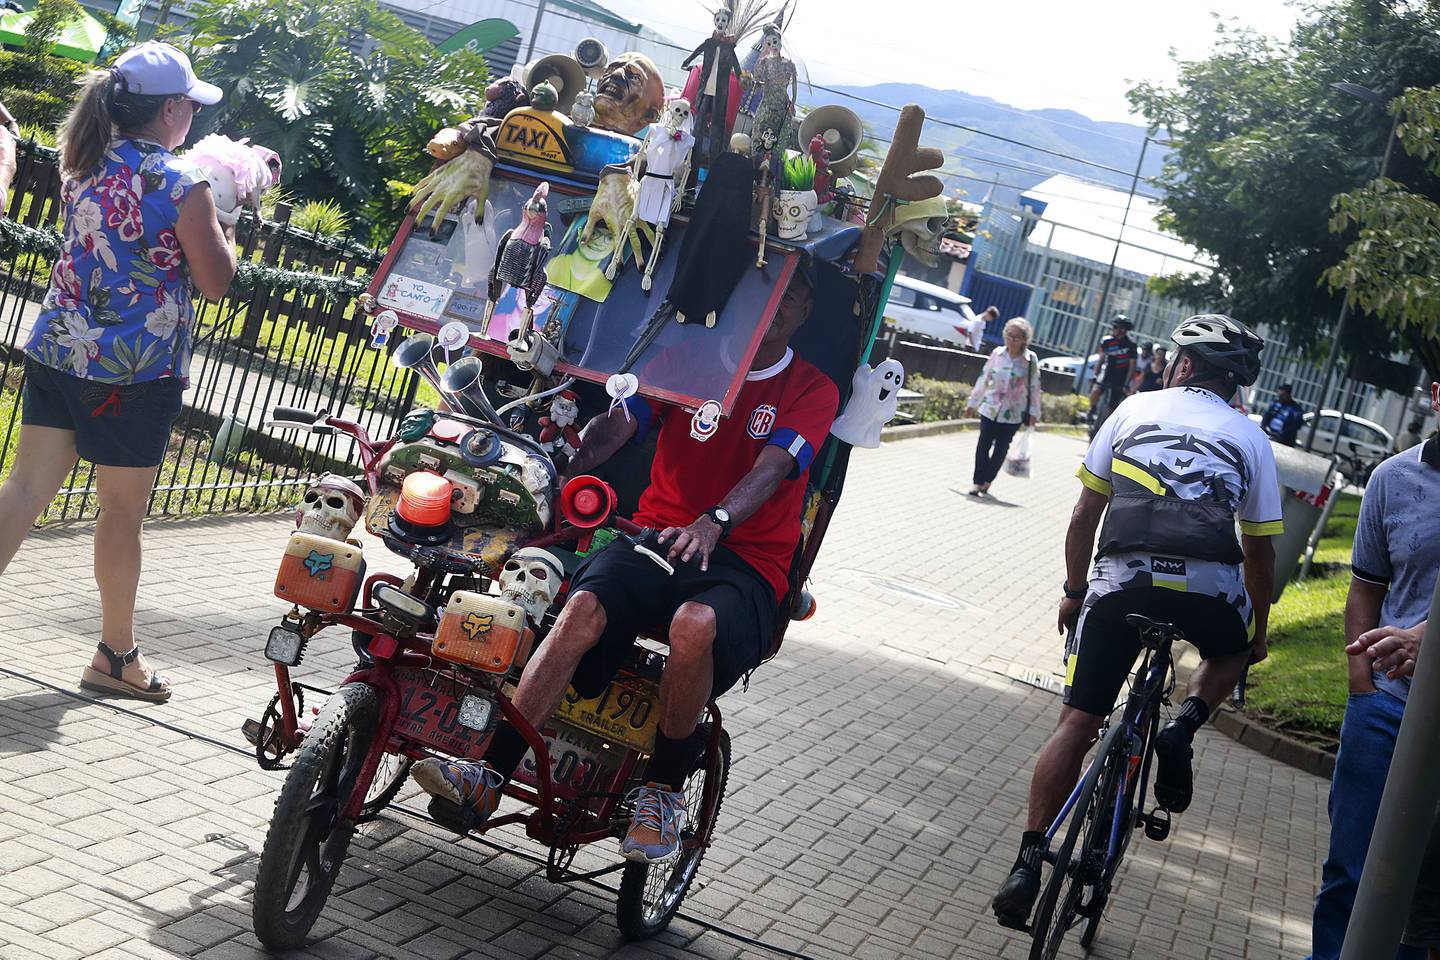 Dagoberto Solano es el dueño de una colorida bicicleta, a la que llama "Betty la fea".